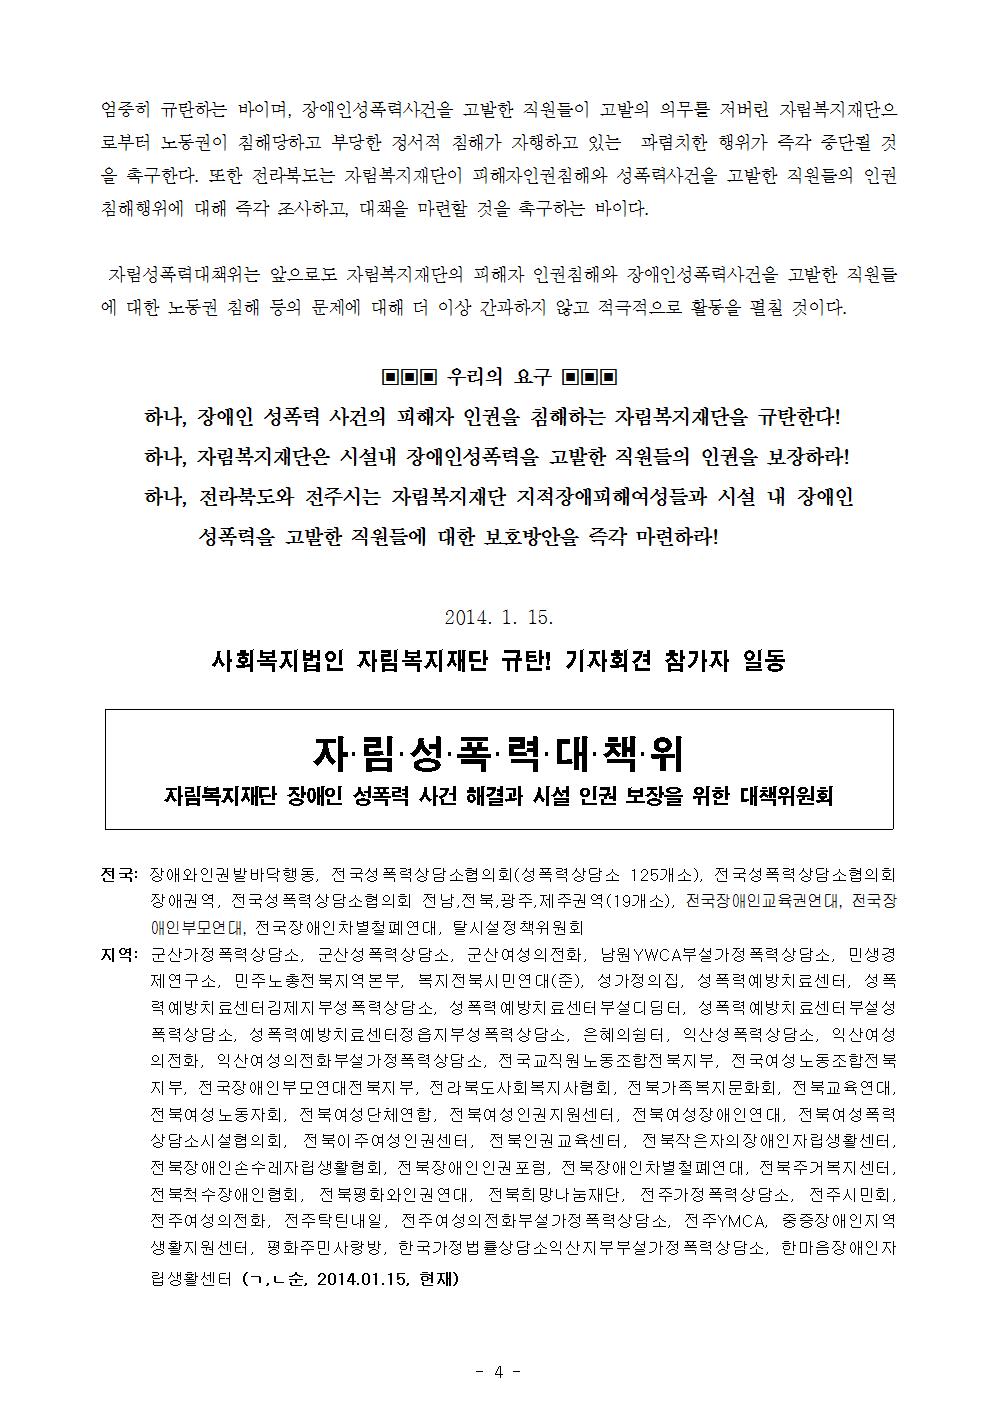 [보도자료]자림복지재단규탄기자회견_2014.01.15[최종]004.jpg